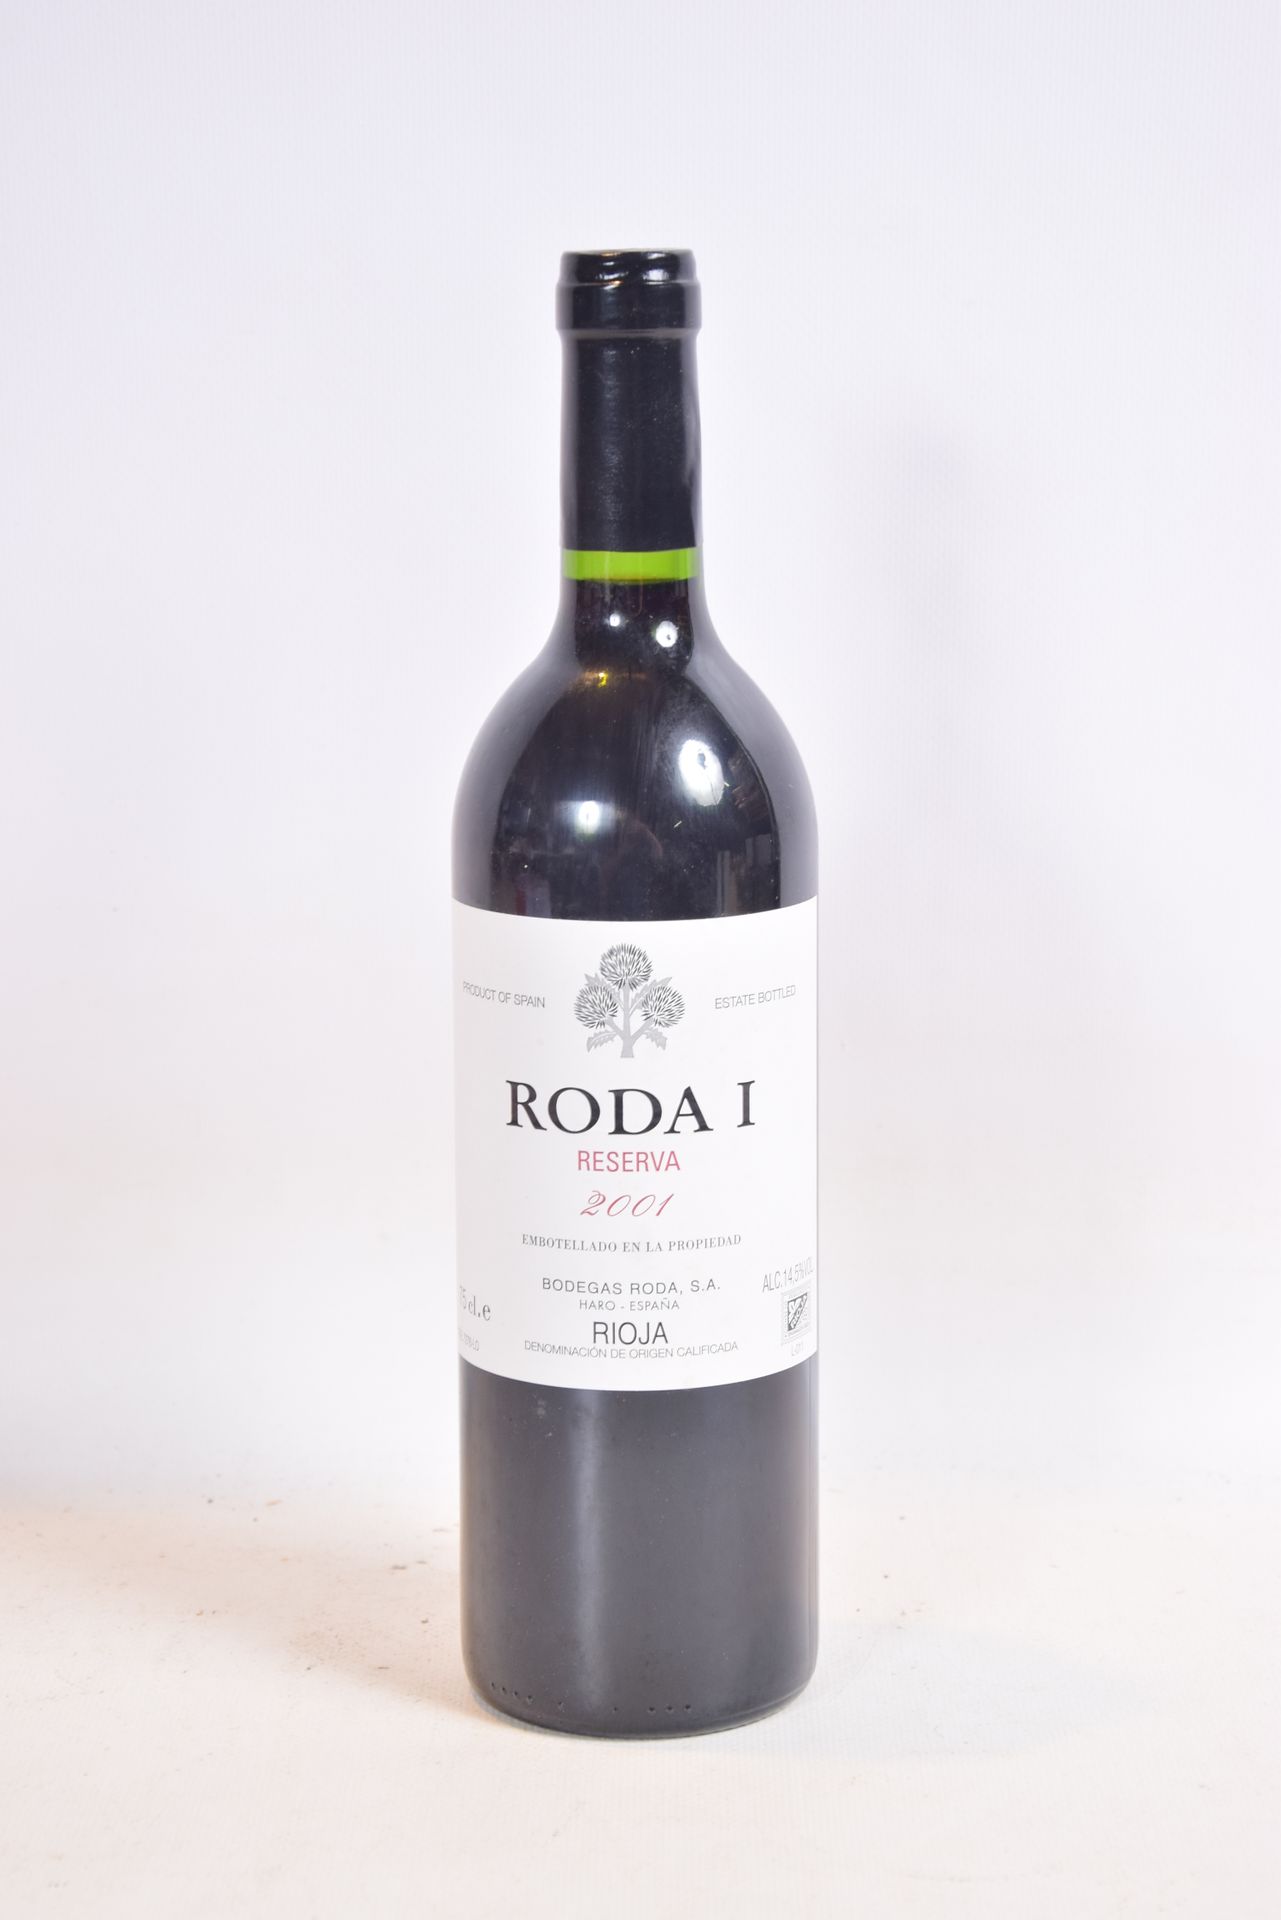 Null 1 Blle Rioja RODA 1 Reserva mise Bodegas Roda (España) 2001

	Presentación &hellip;